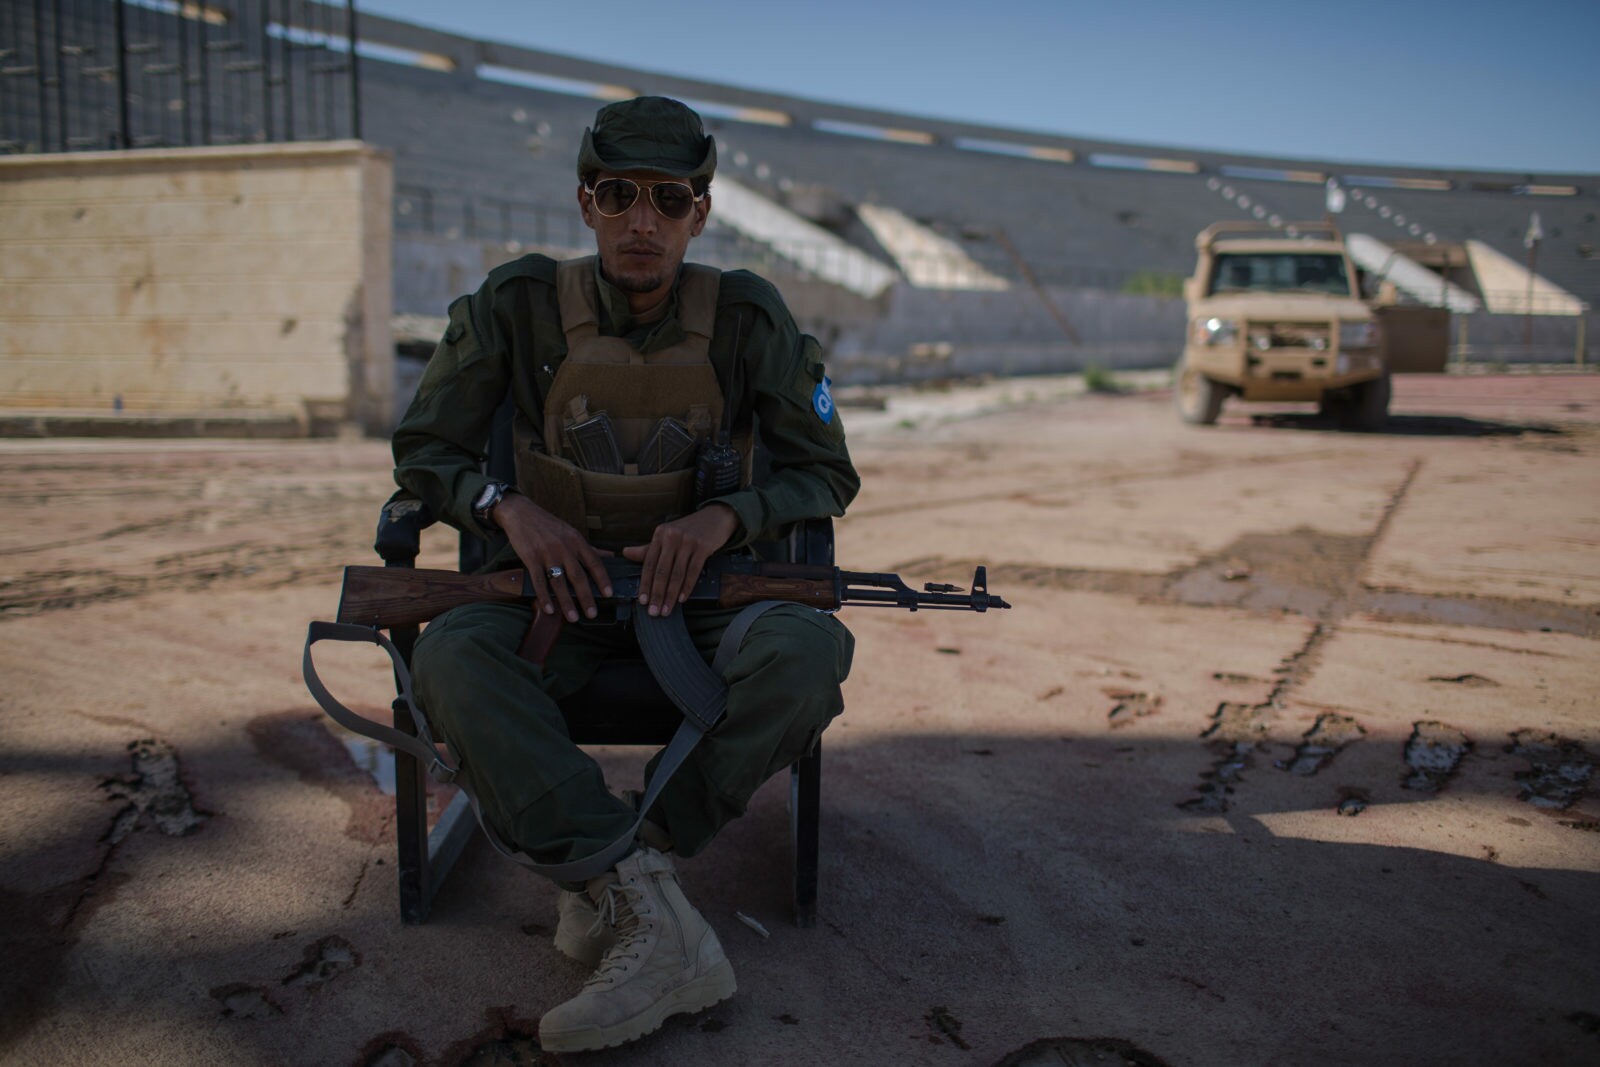 Soldado acompanha a partida entre Raqqa e Manbij